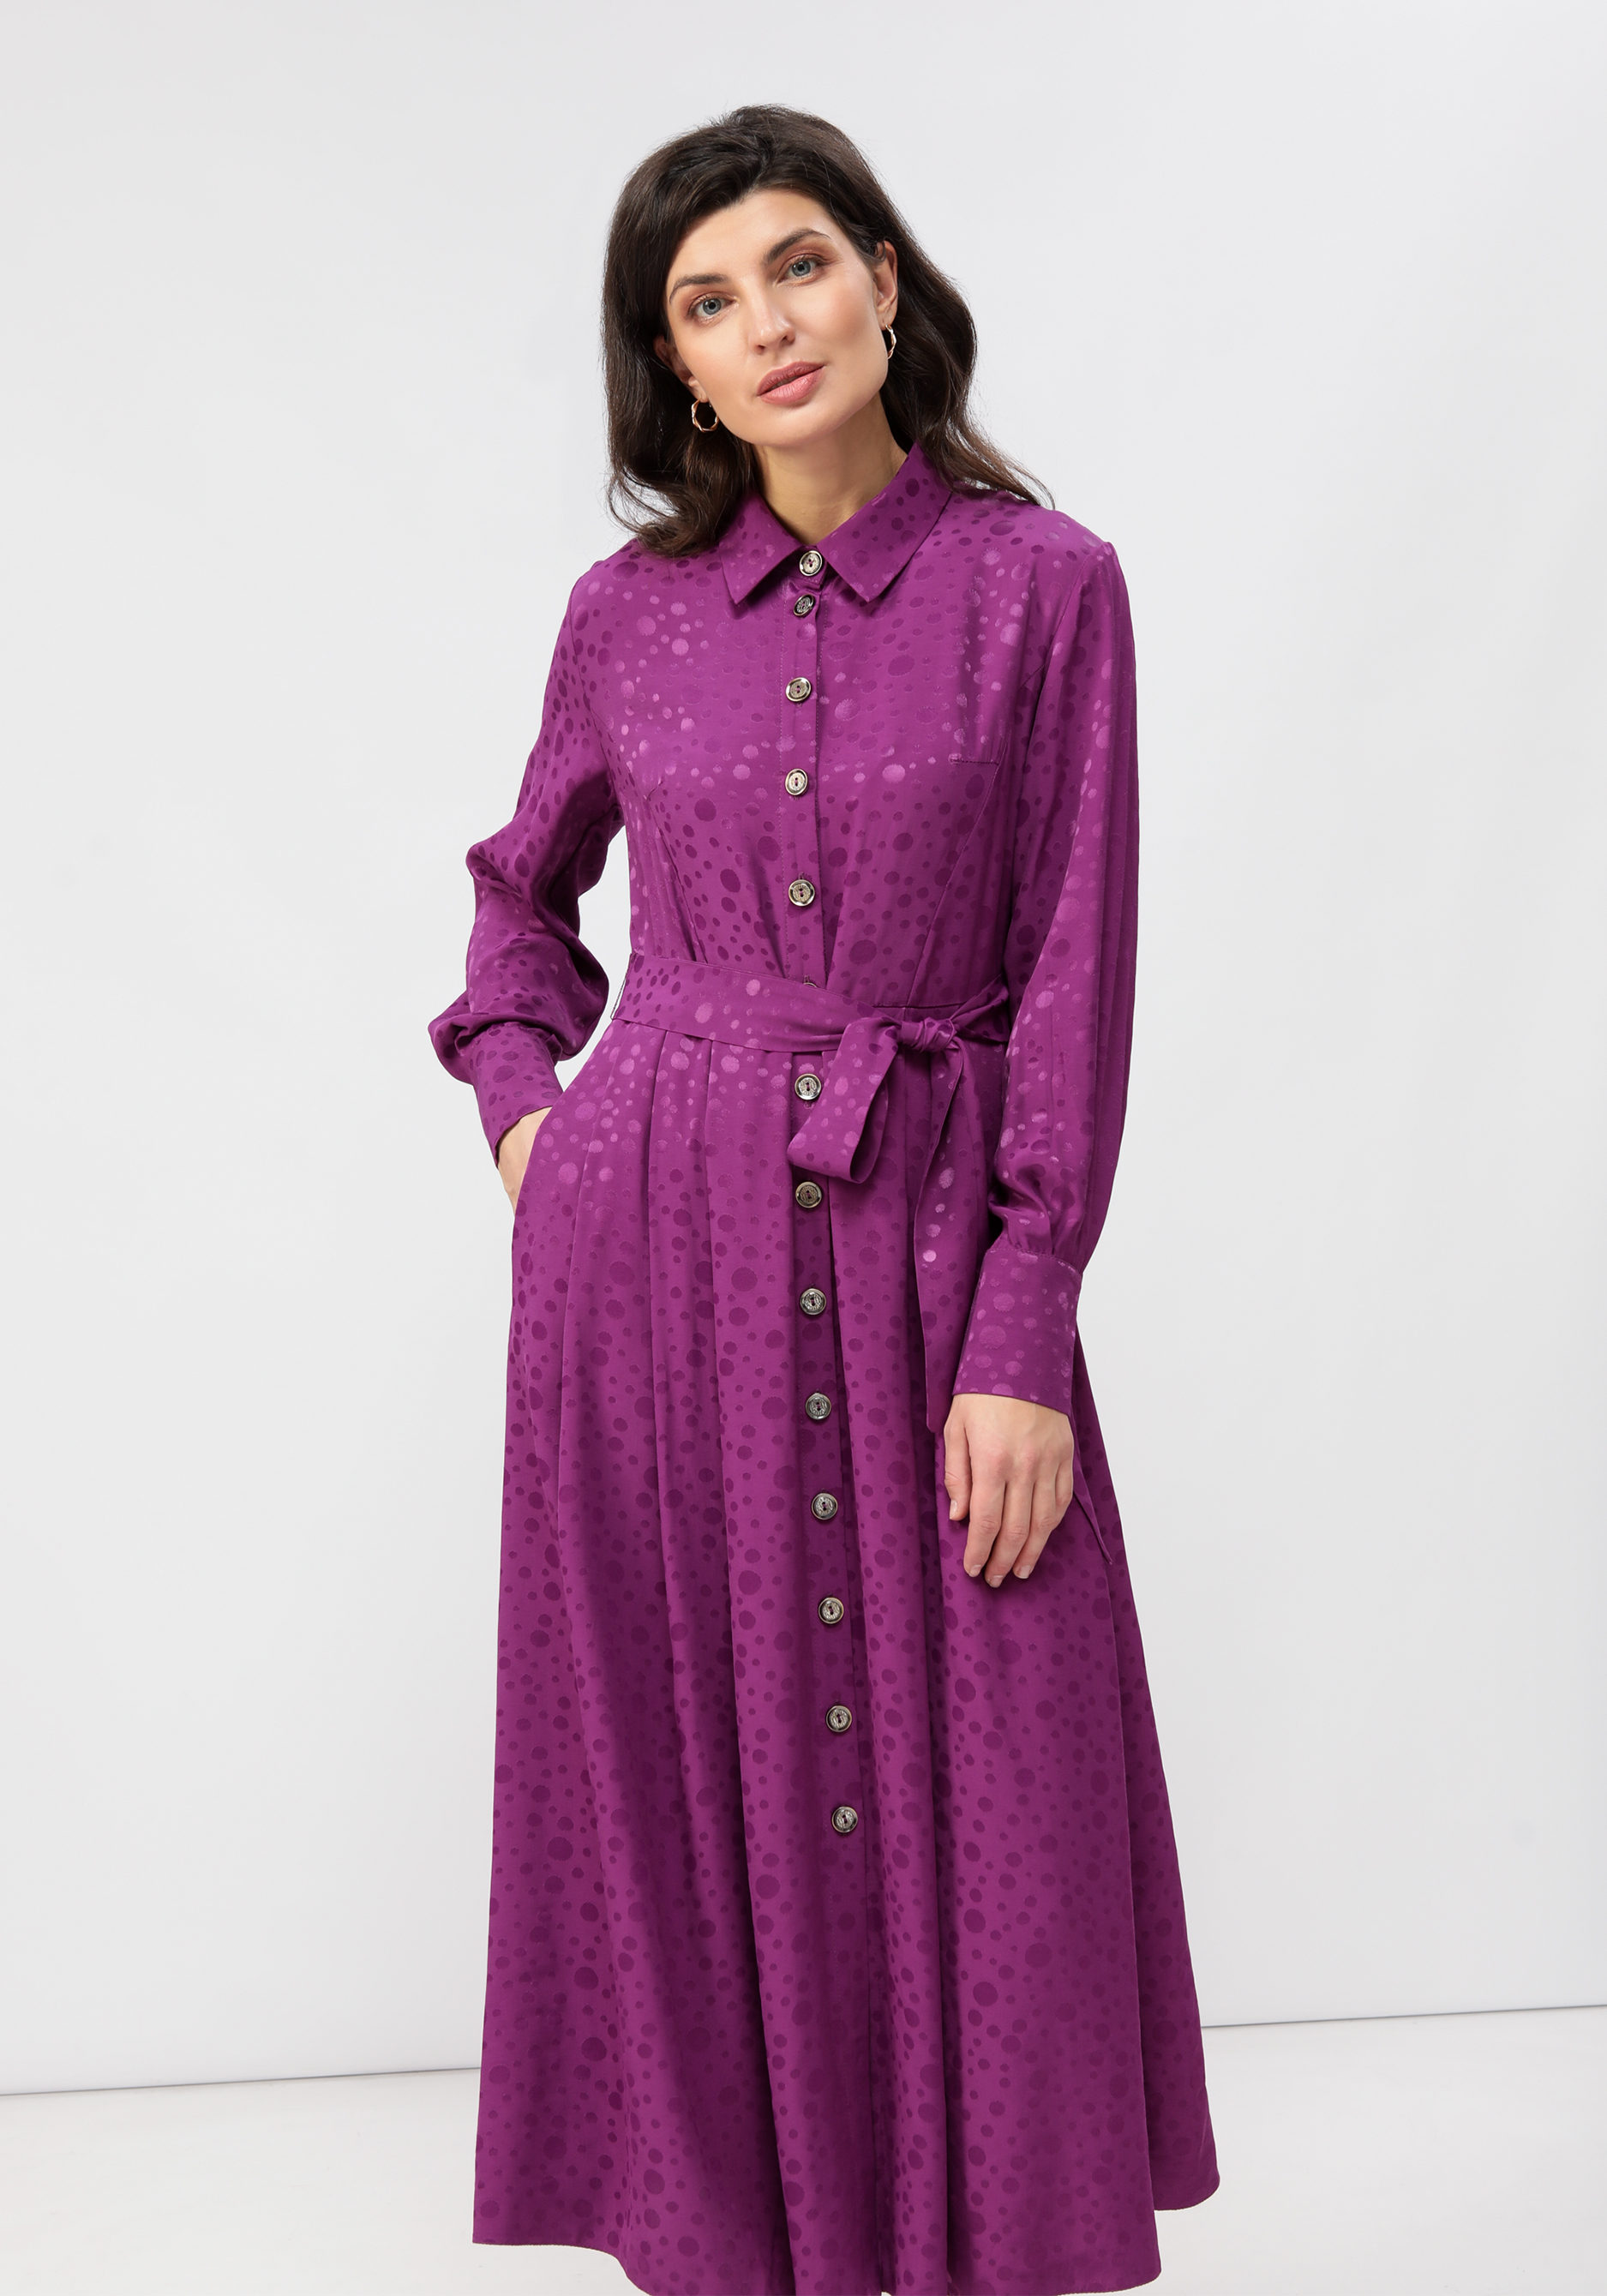 Платье на пуговицах со складками на юбке Vivienne Mare, цвет фиолетовый, размер 50 - фото 4